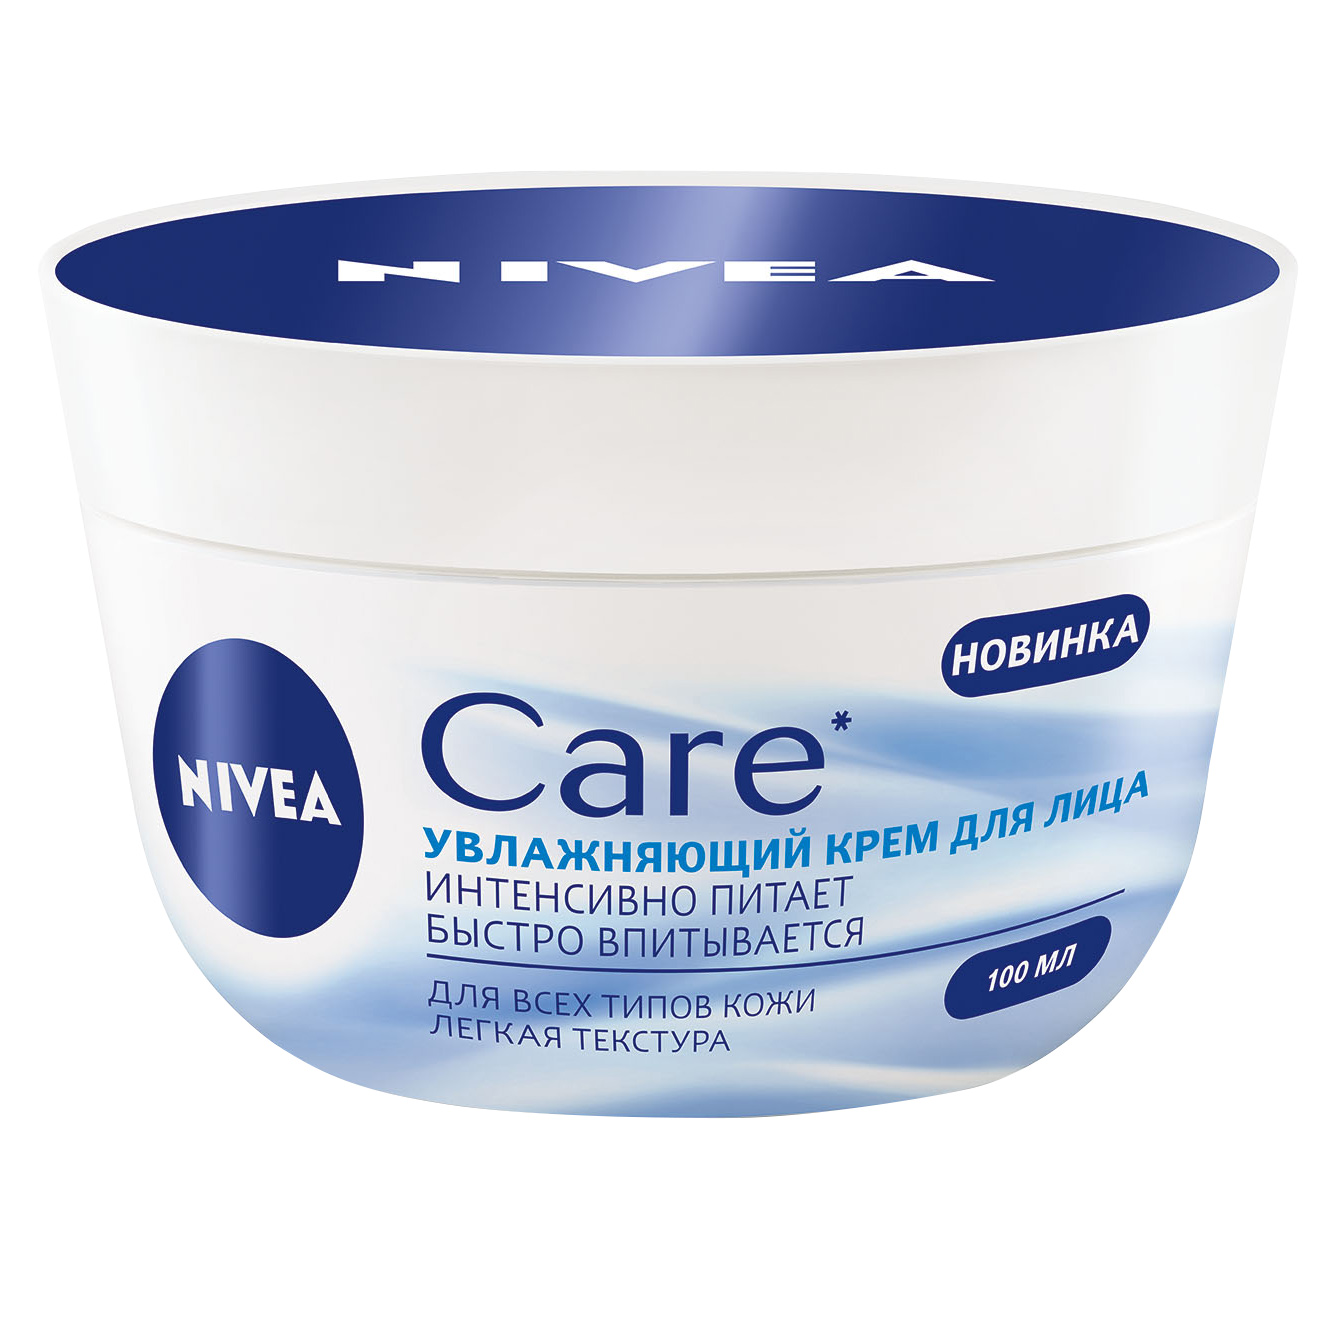 Питательный крем-легкость Nivea Care для всех типов кожи 100 мл foot care крем для ног интенсивный 100 мл